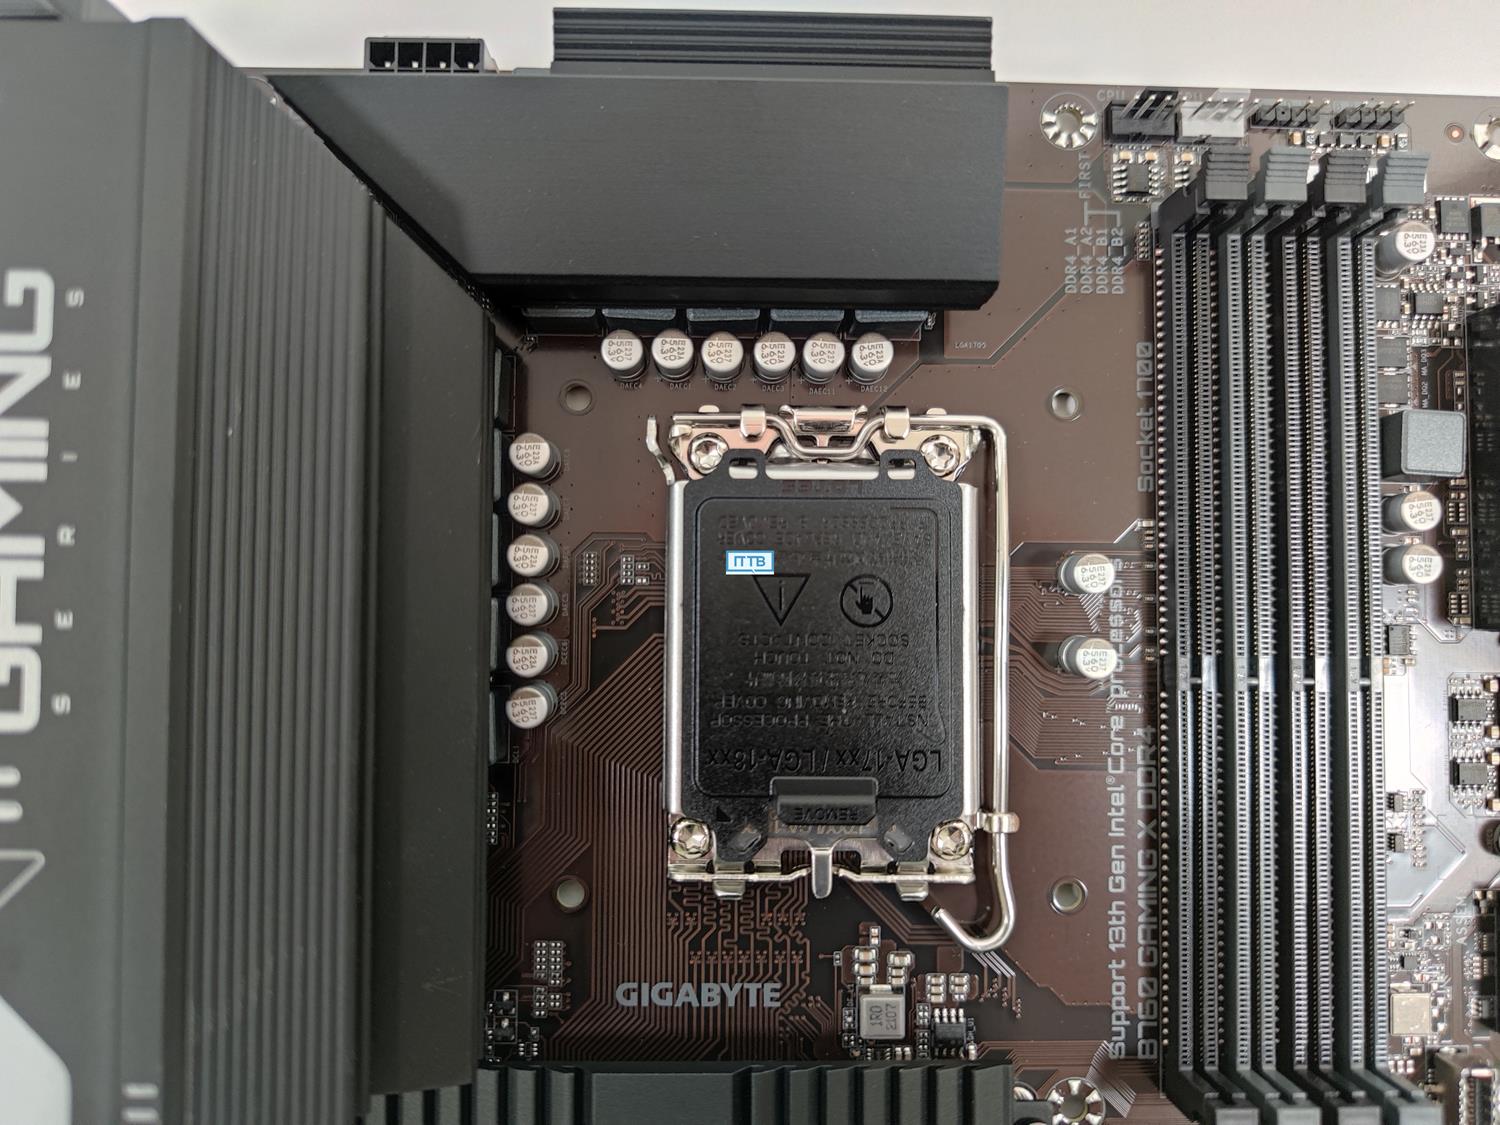 test Gigabyte B760 Gaming X DDR4, recenzja Gigabyte B760 Gaming X DDR4, opinia Gigabyte B760 Gaming X DDR4